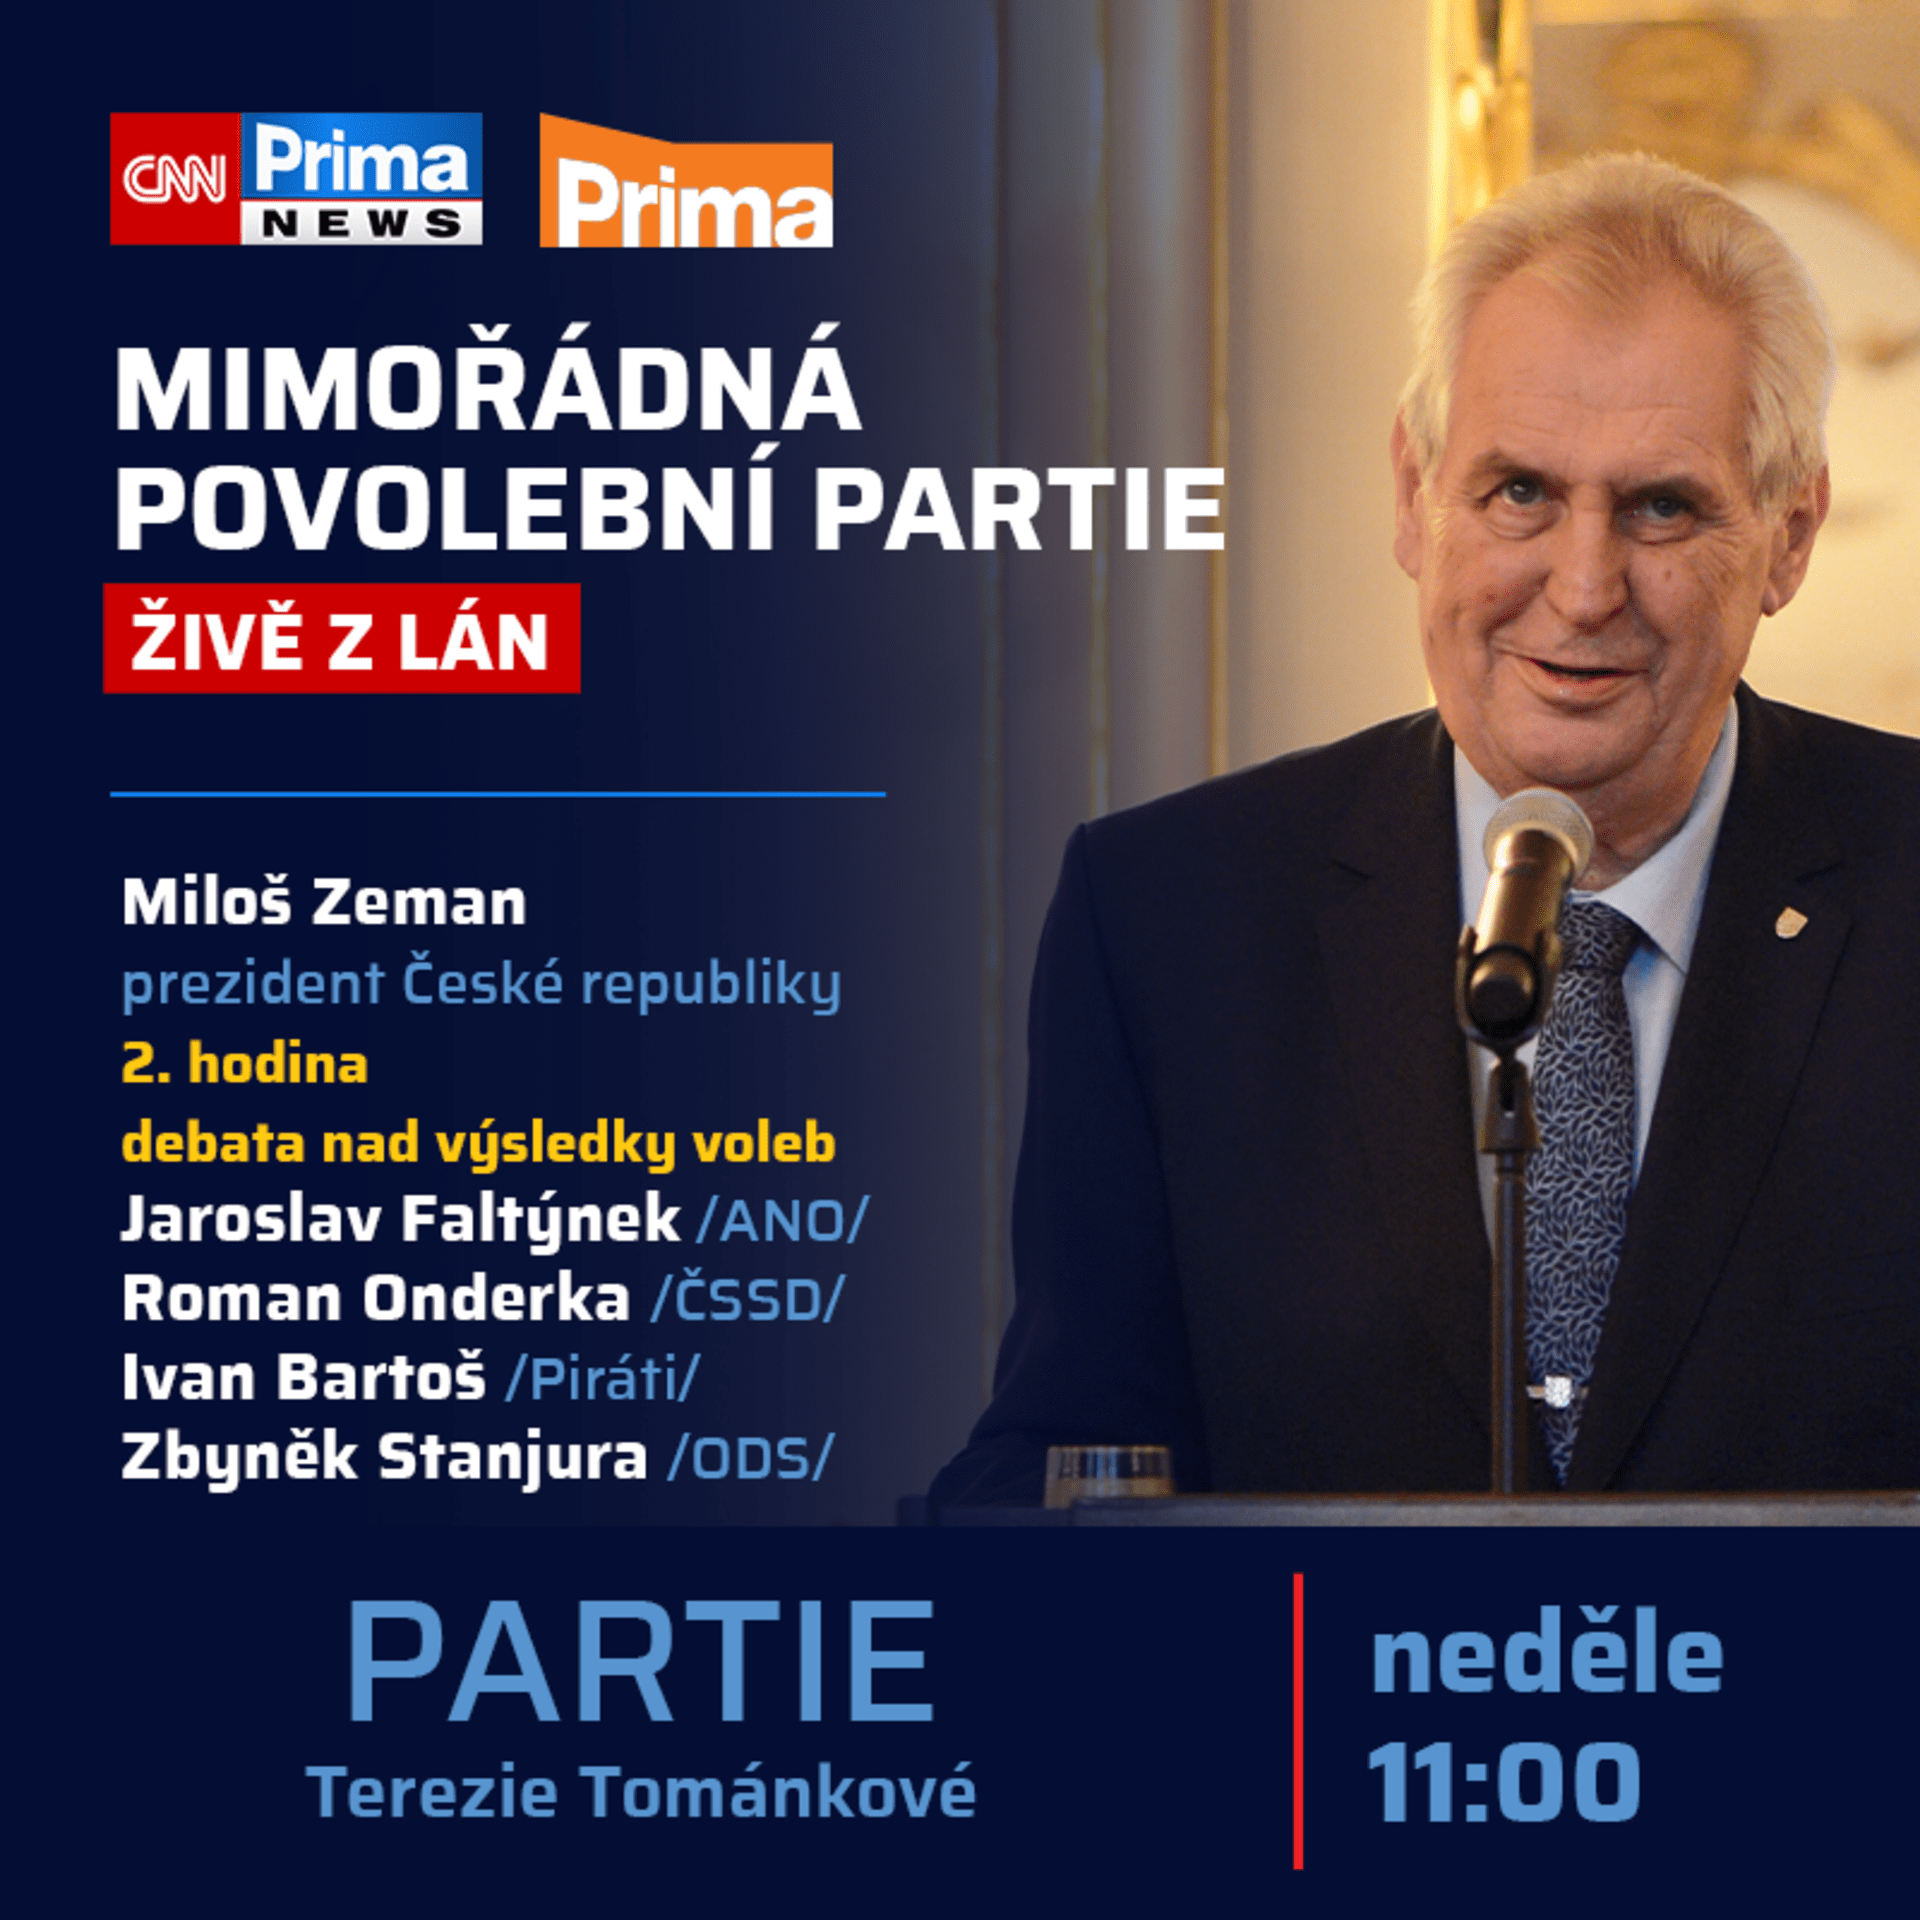 Hostem speciální povolební Partie bude prezident Miloš Zeman